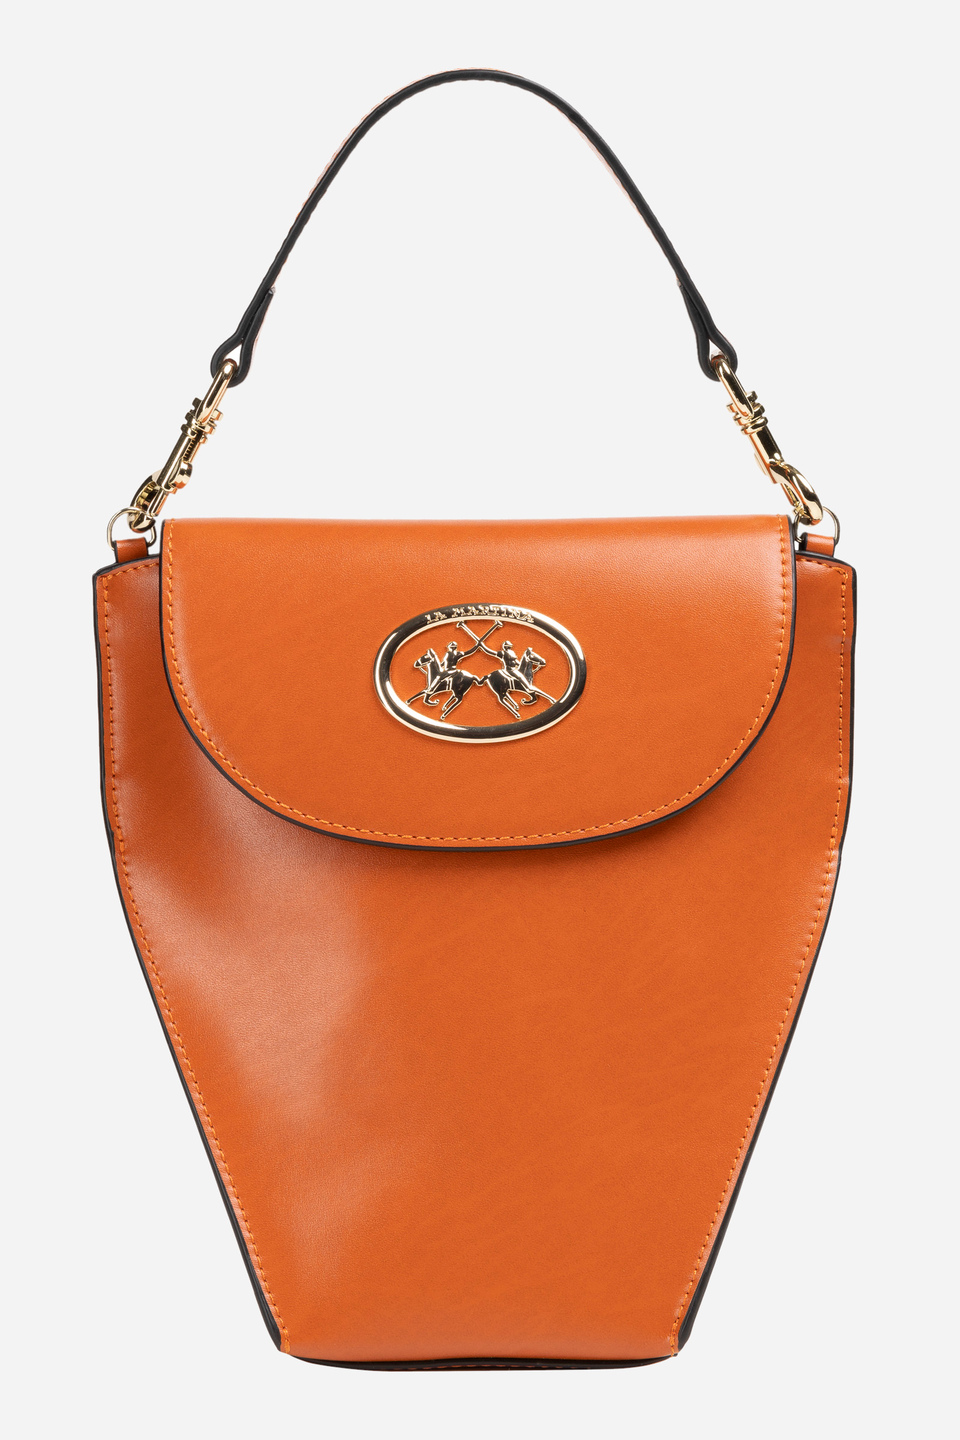 Women's PU fabric handbag | La Martina - Official Online Shop